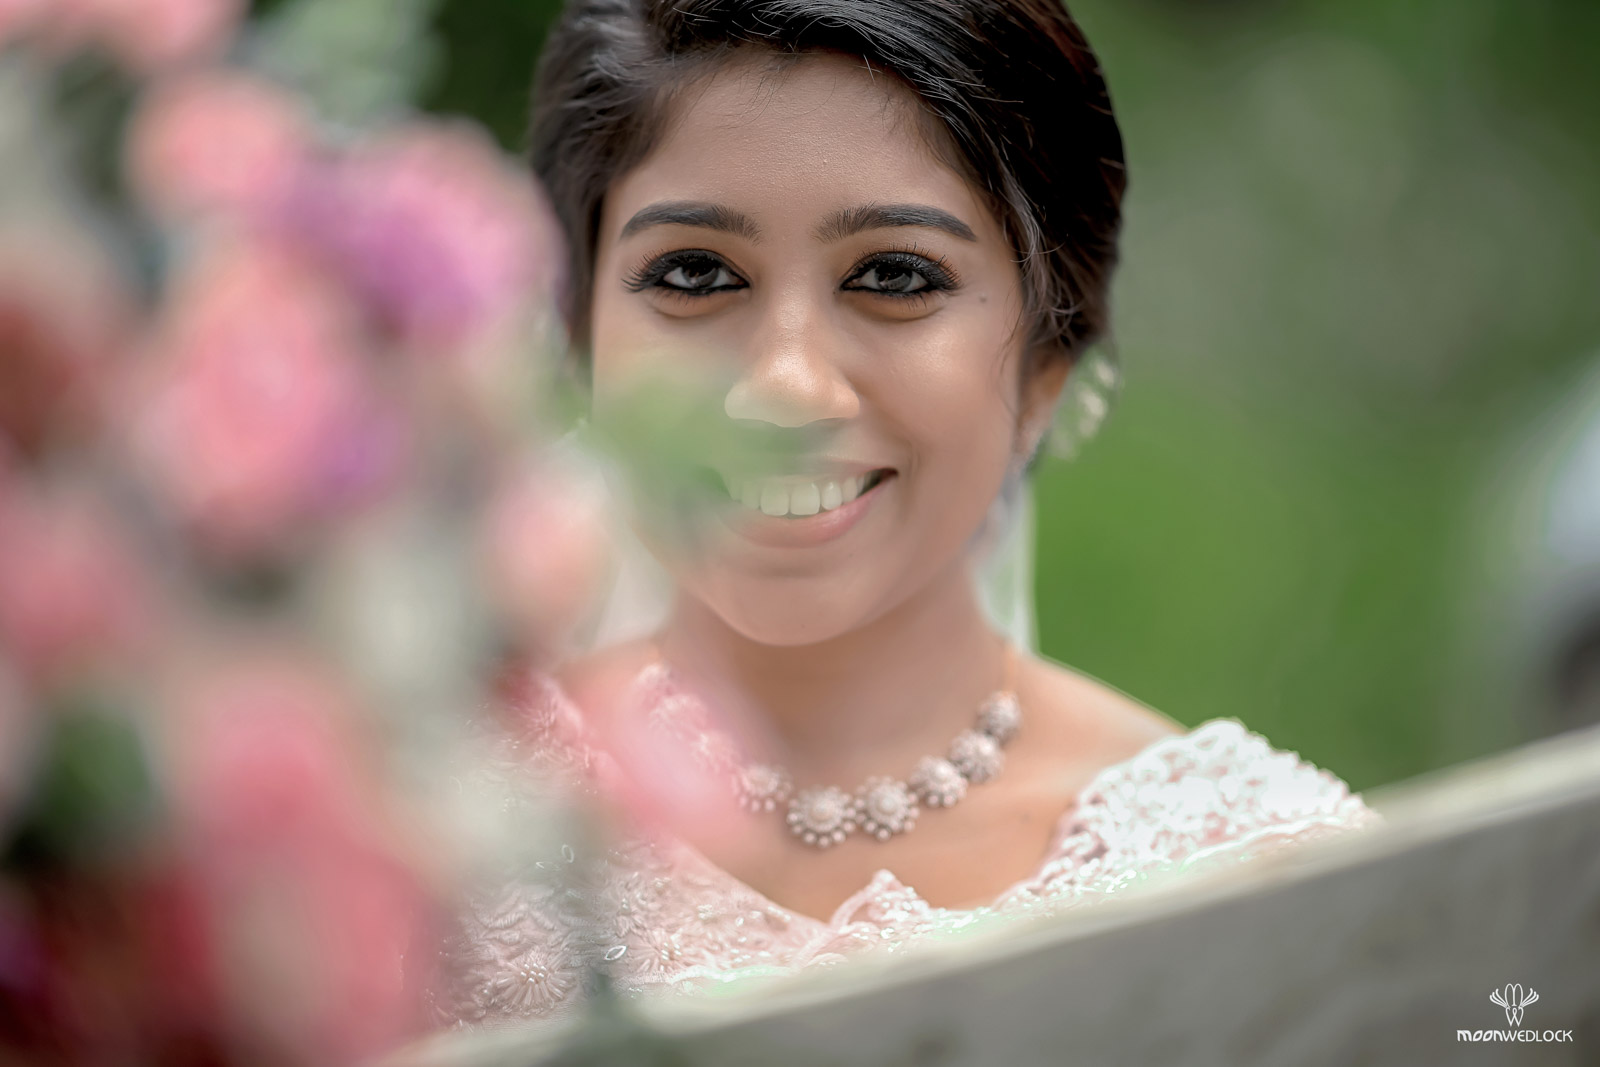 bangalore-christian-wedding-photography-moonwedlock (2)-2